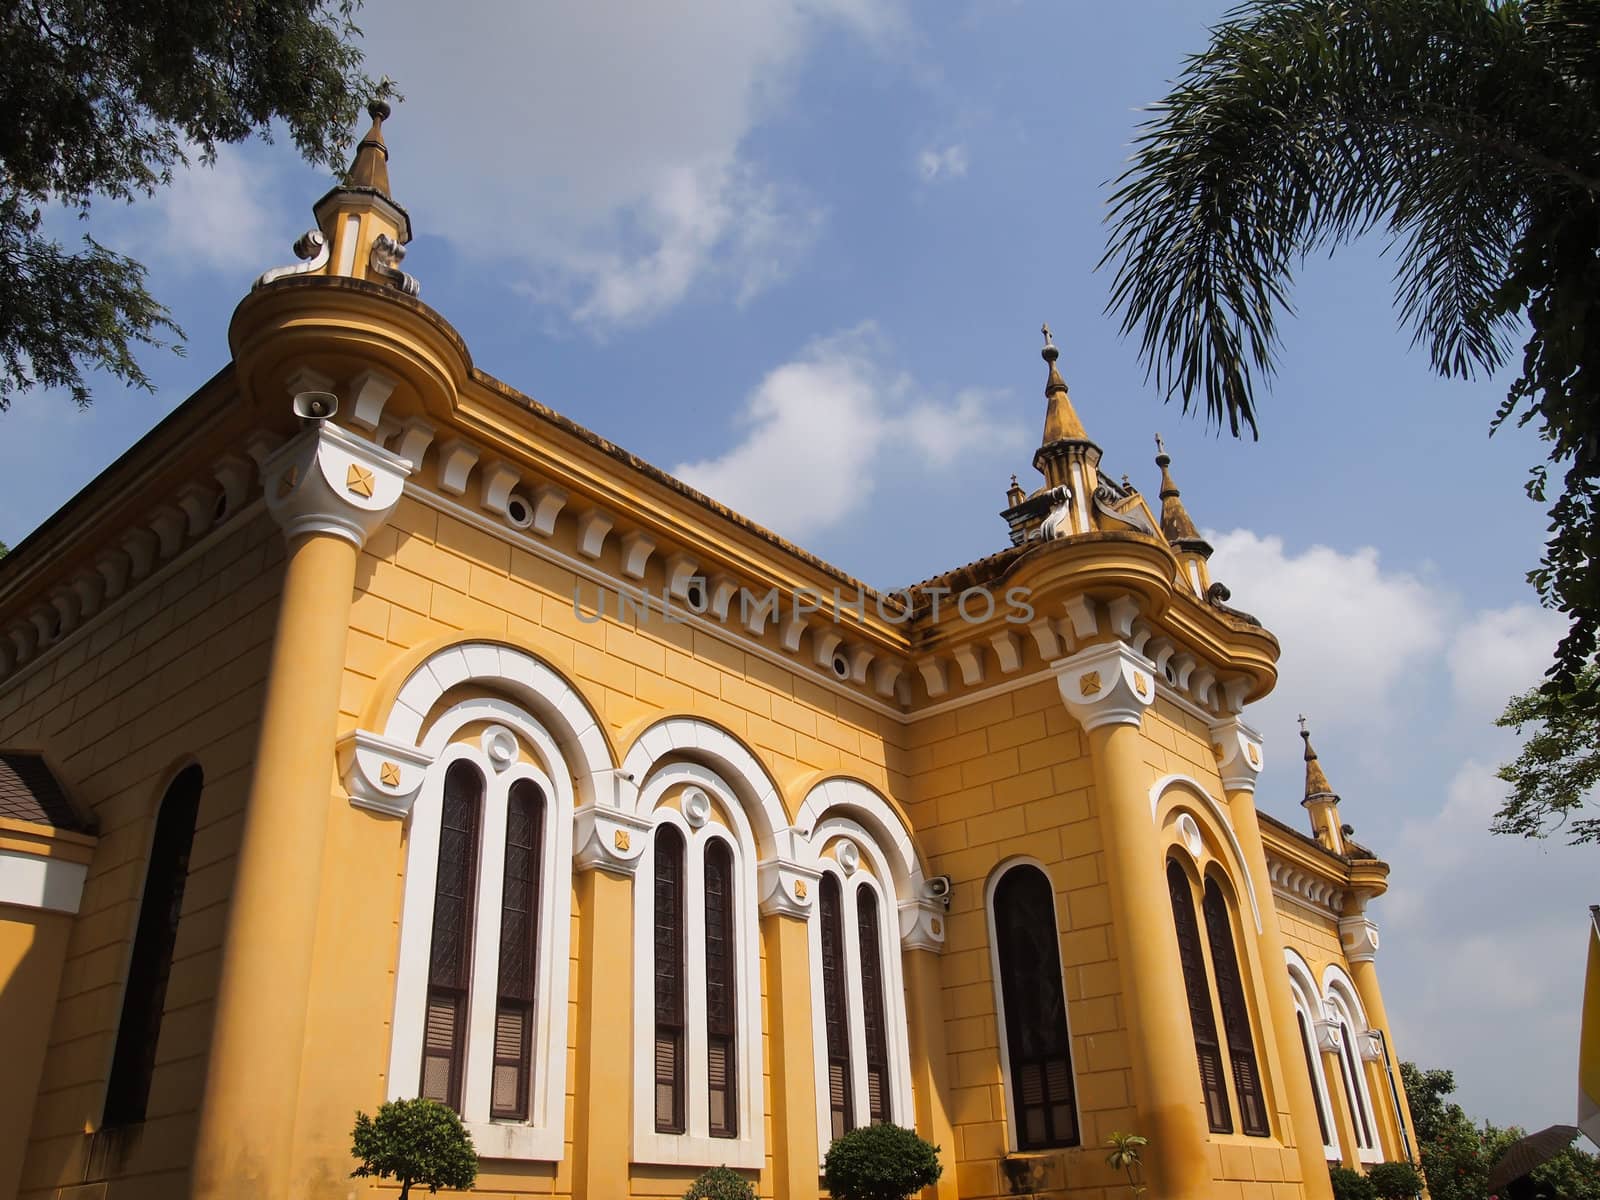 St. Joseph Church In Phra Nakorn Si Ayutthaya, Thailand by siraanamwong